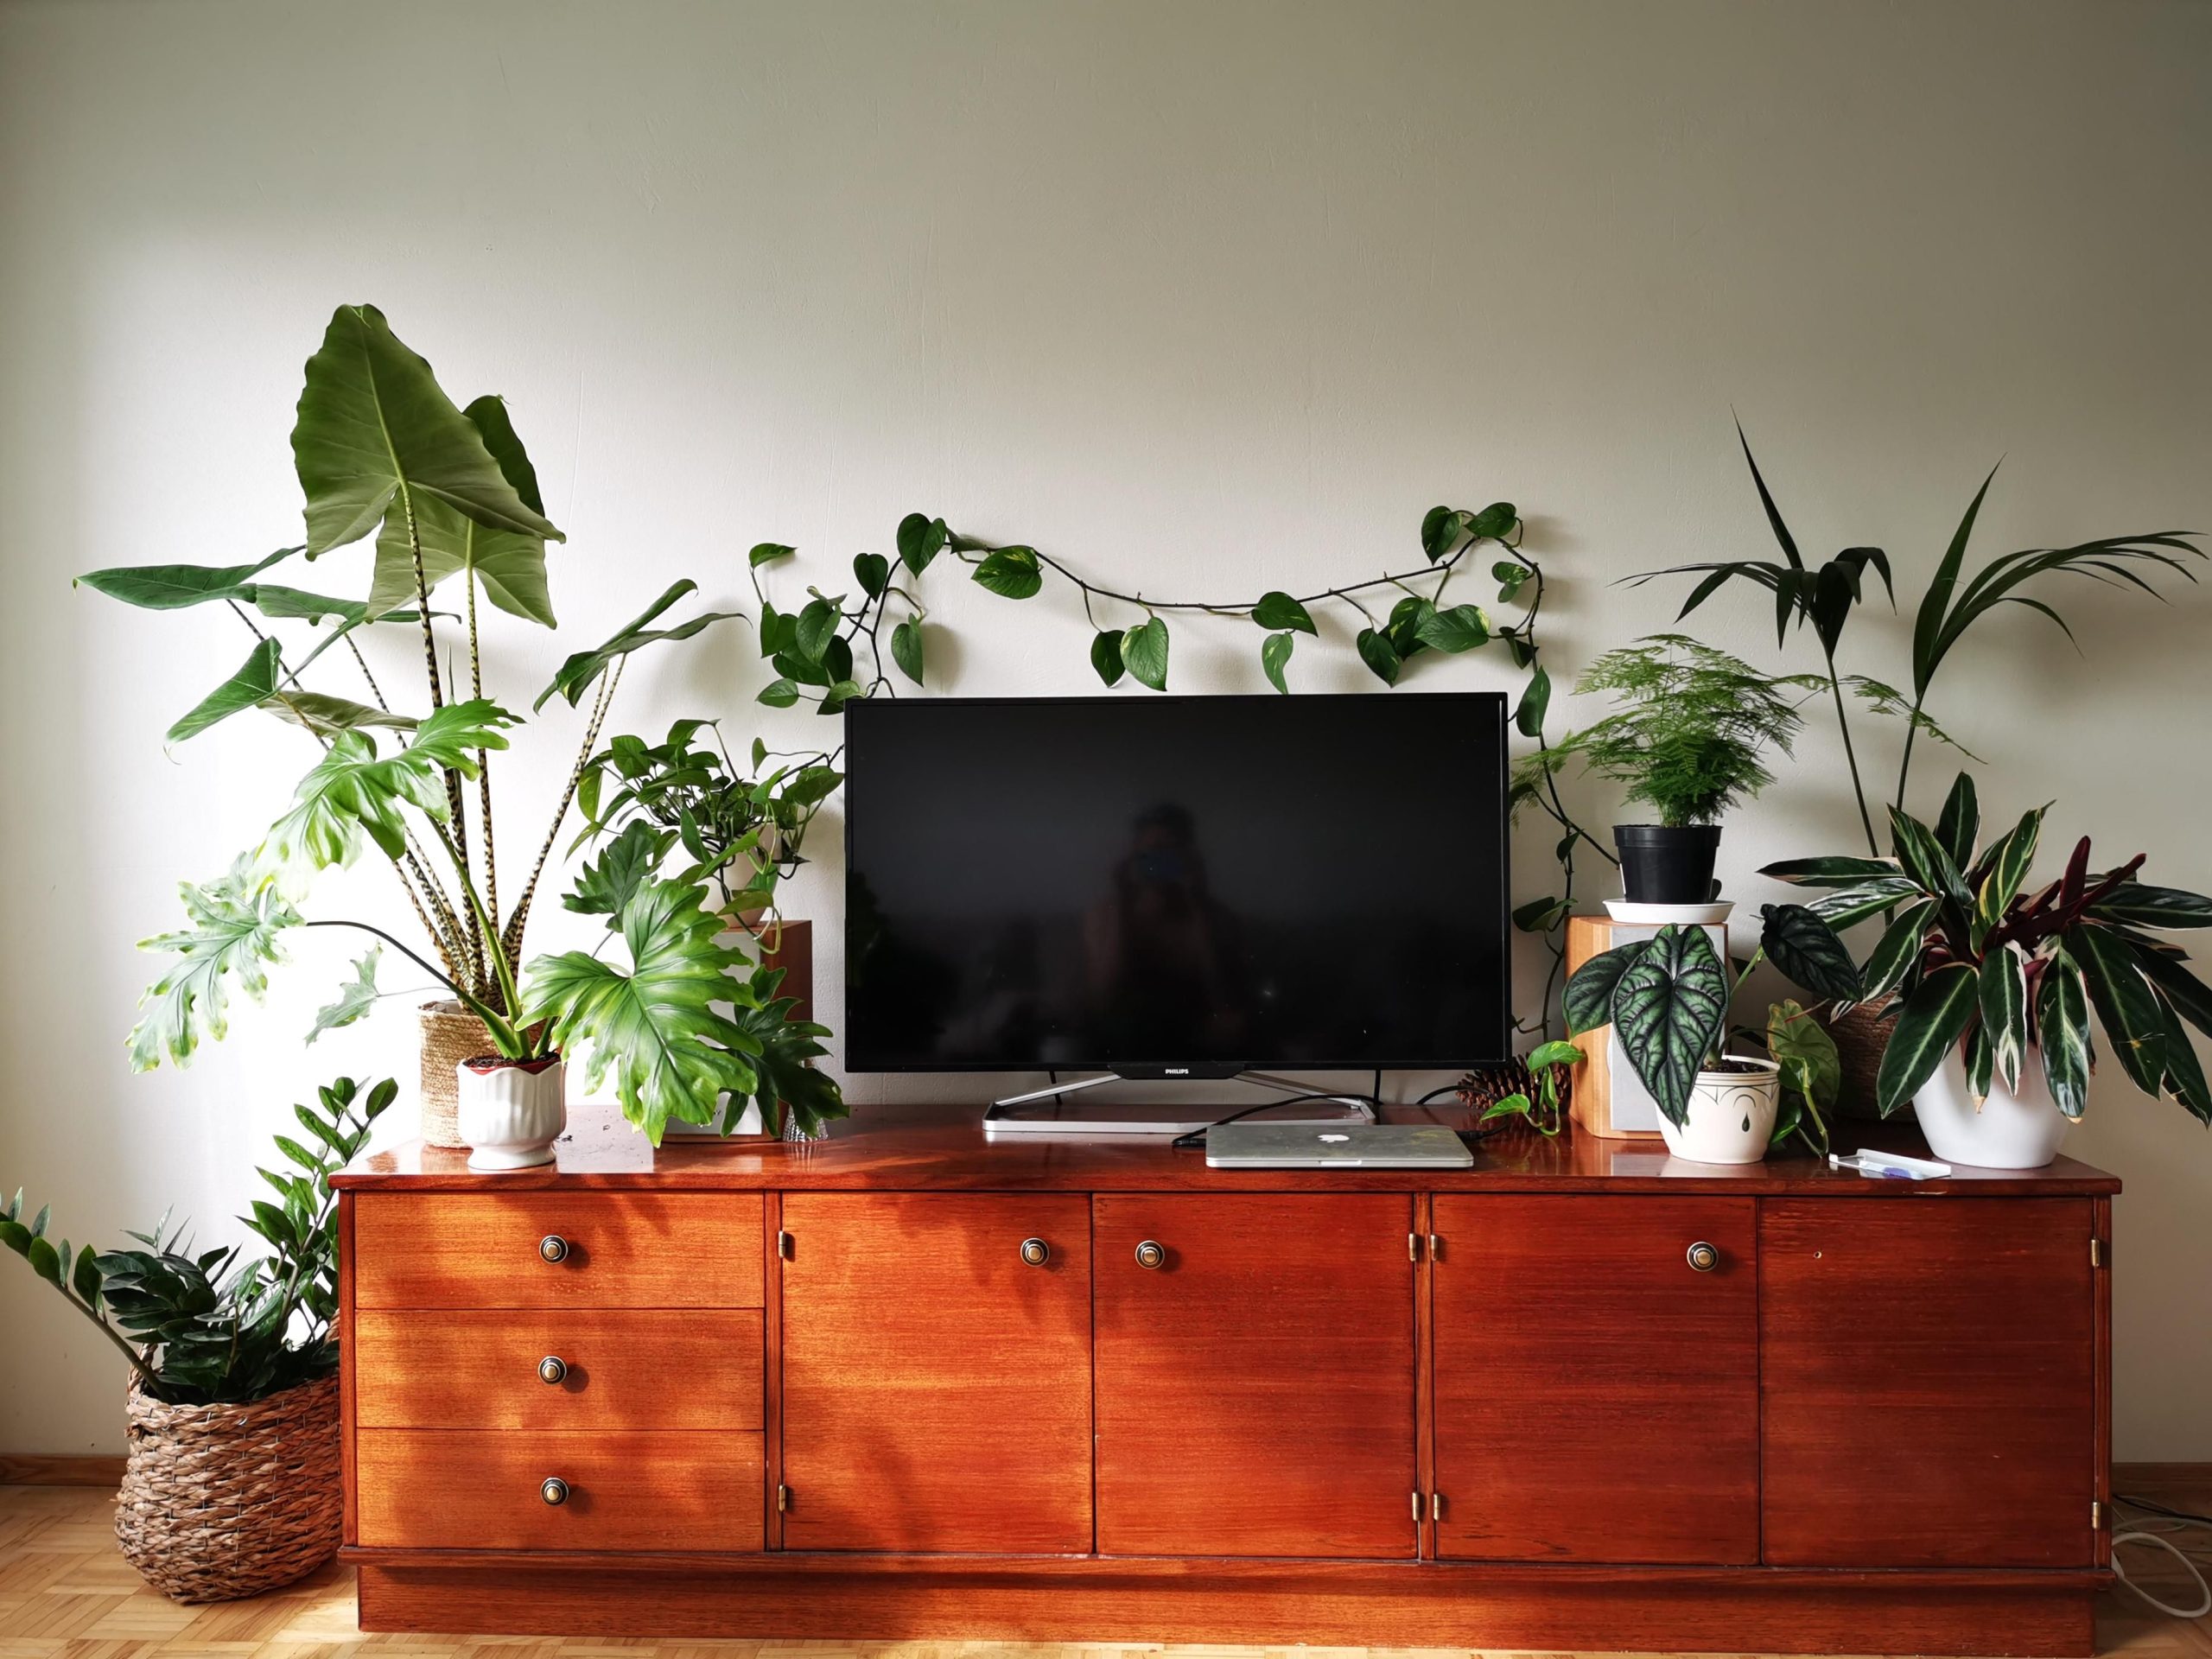 plantas ao redor de rack da TV